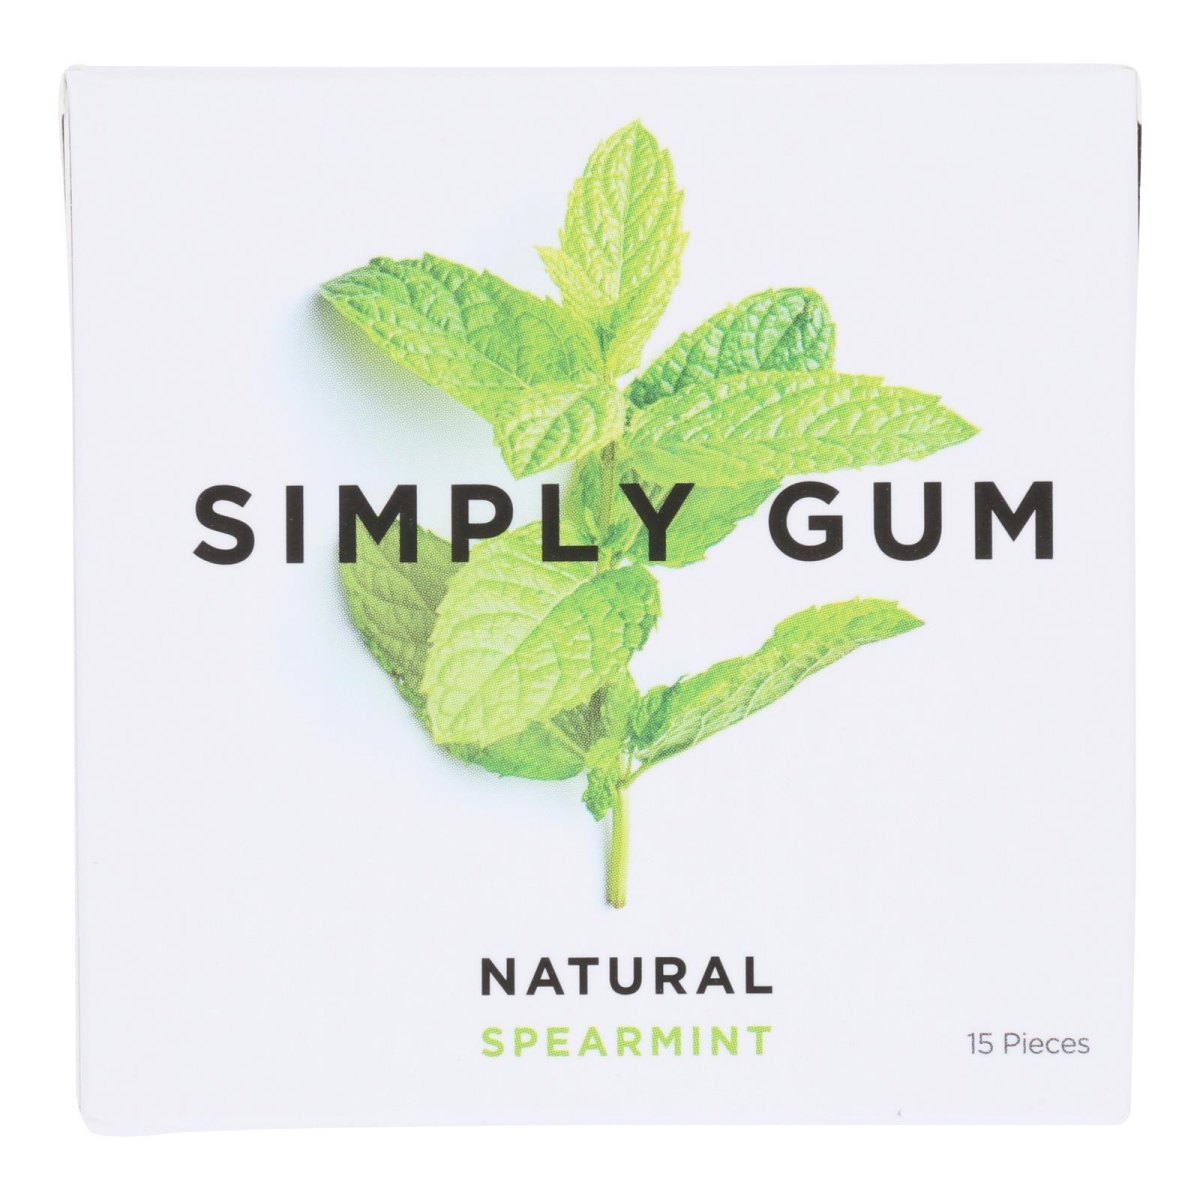 Picture of Simplygum HG2366078 Spearmint Gum - Case of 12 - 15 Count